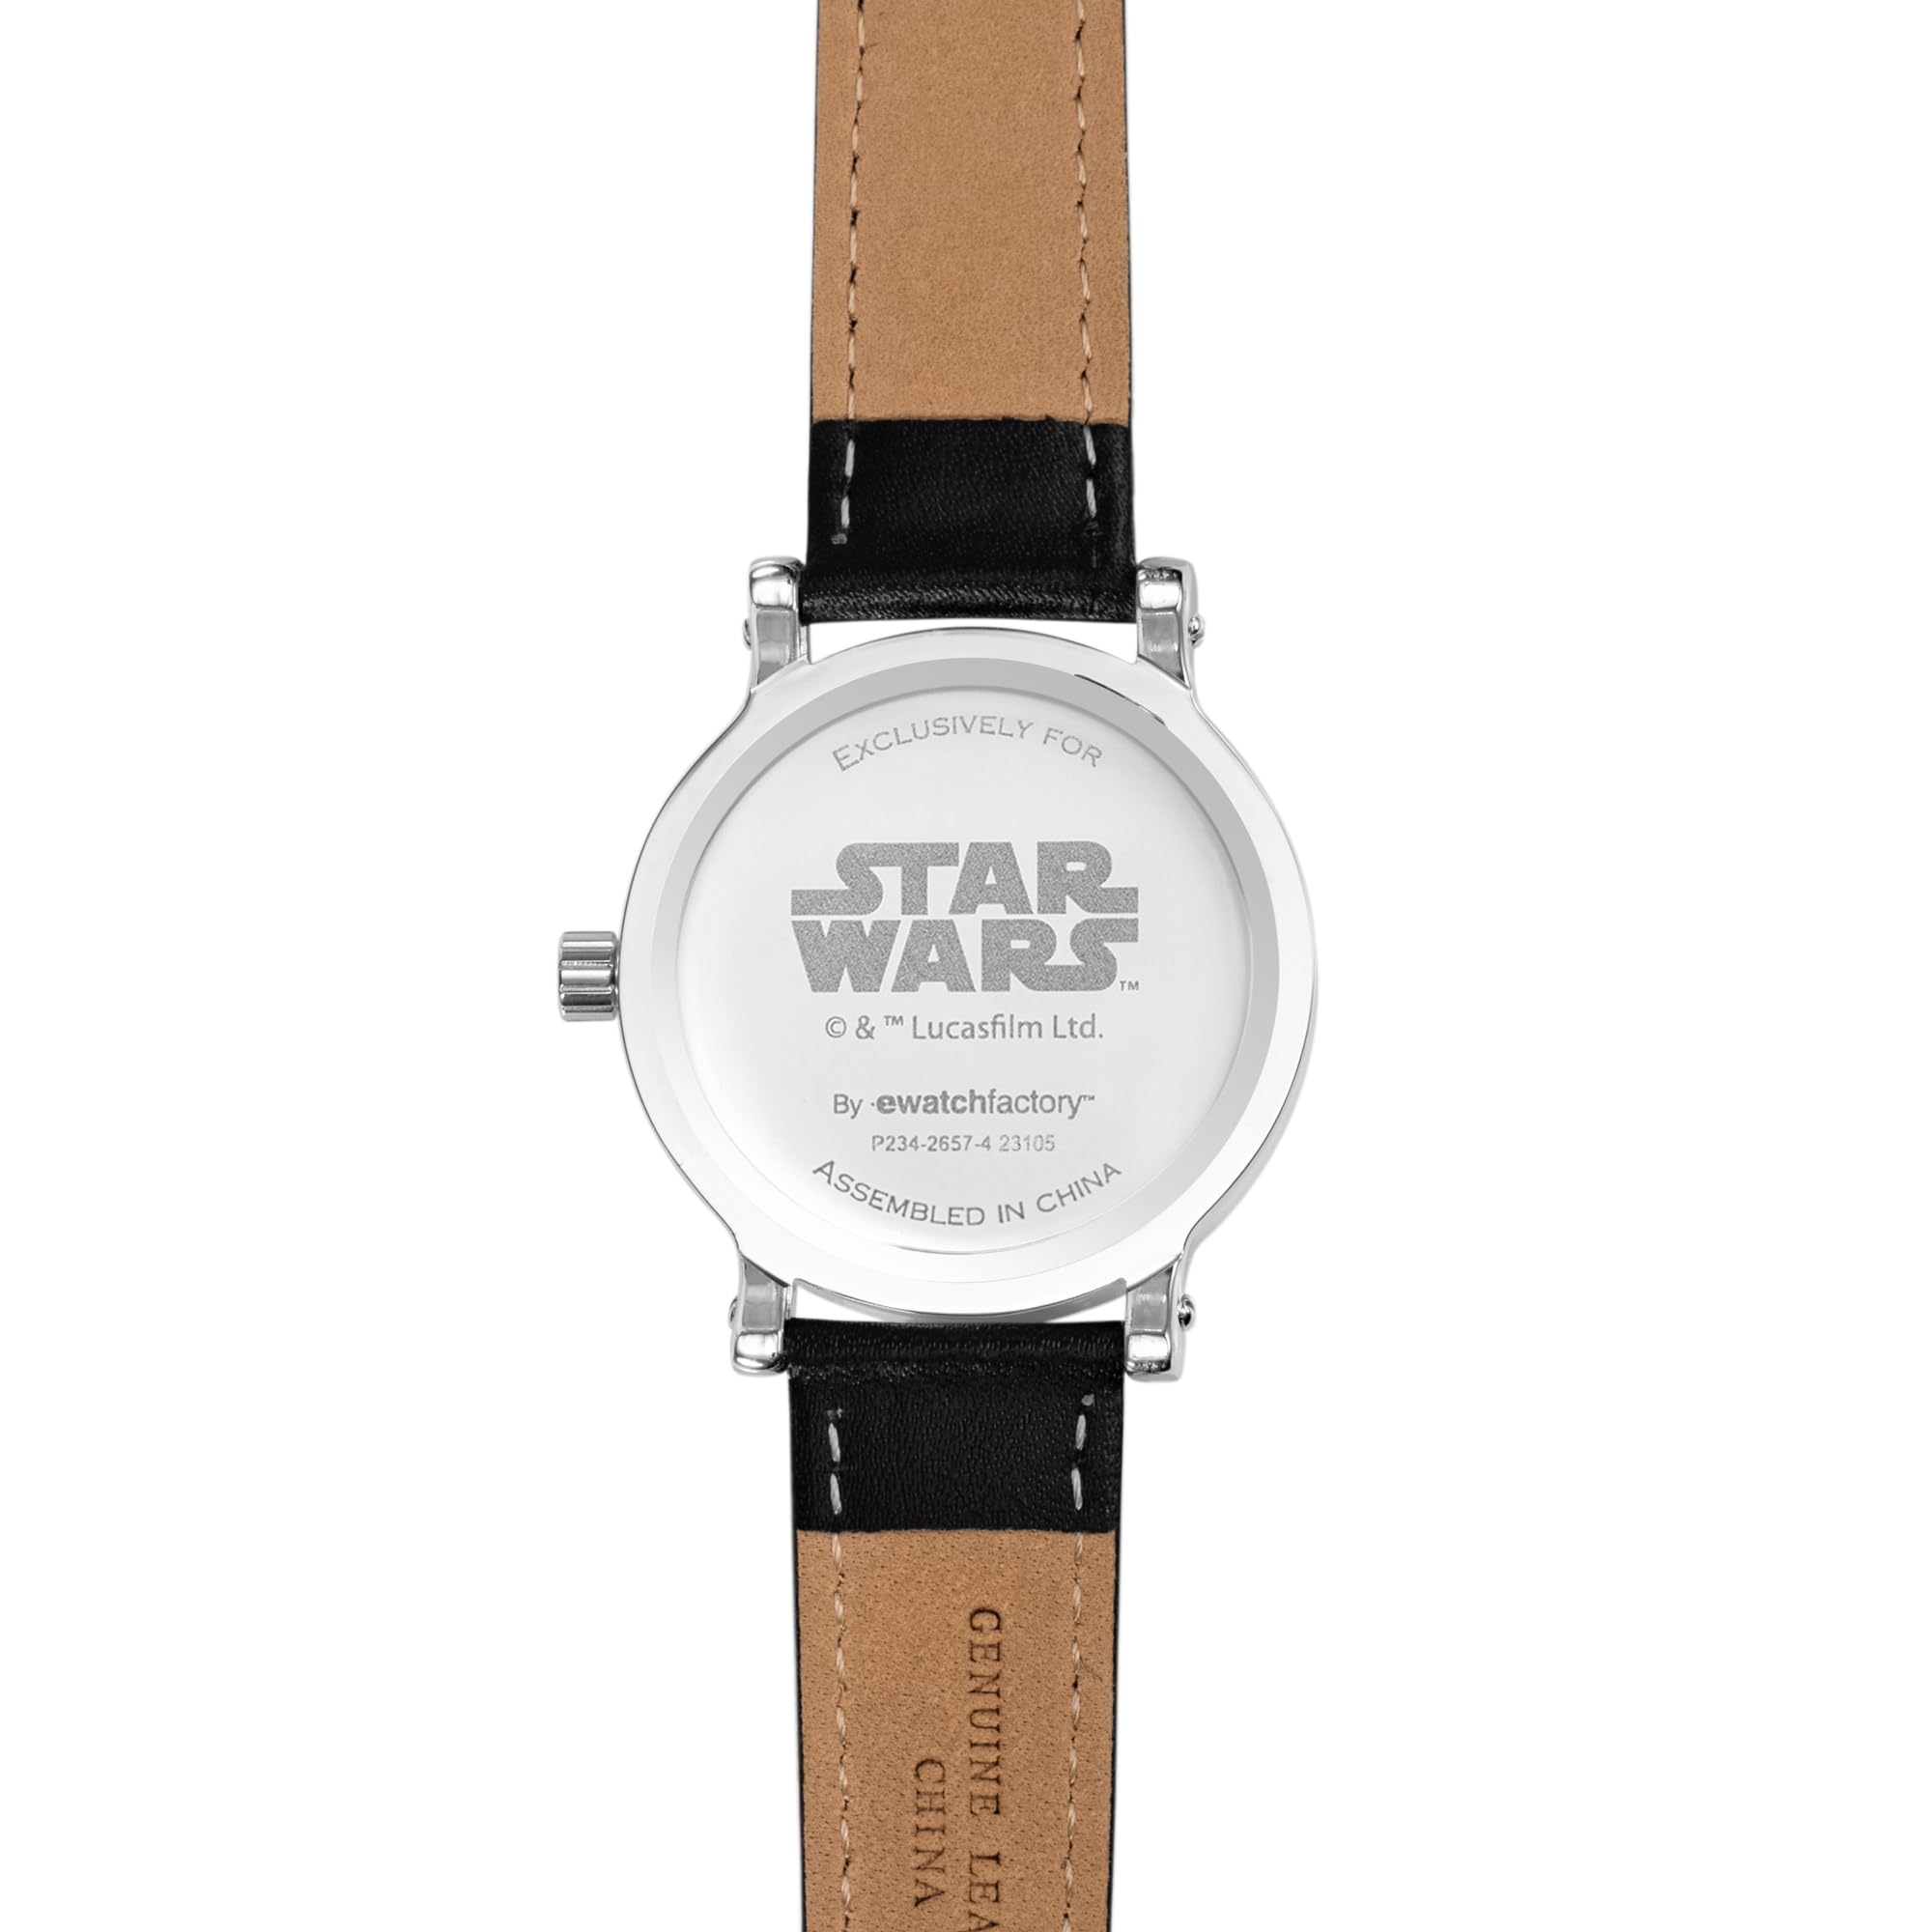 STAR WARS Adult Watch, Vintage Analog Quartz Watch